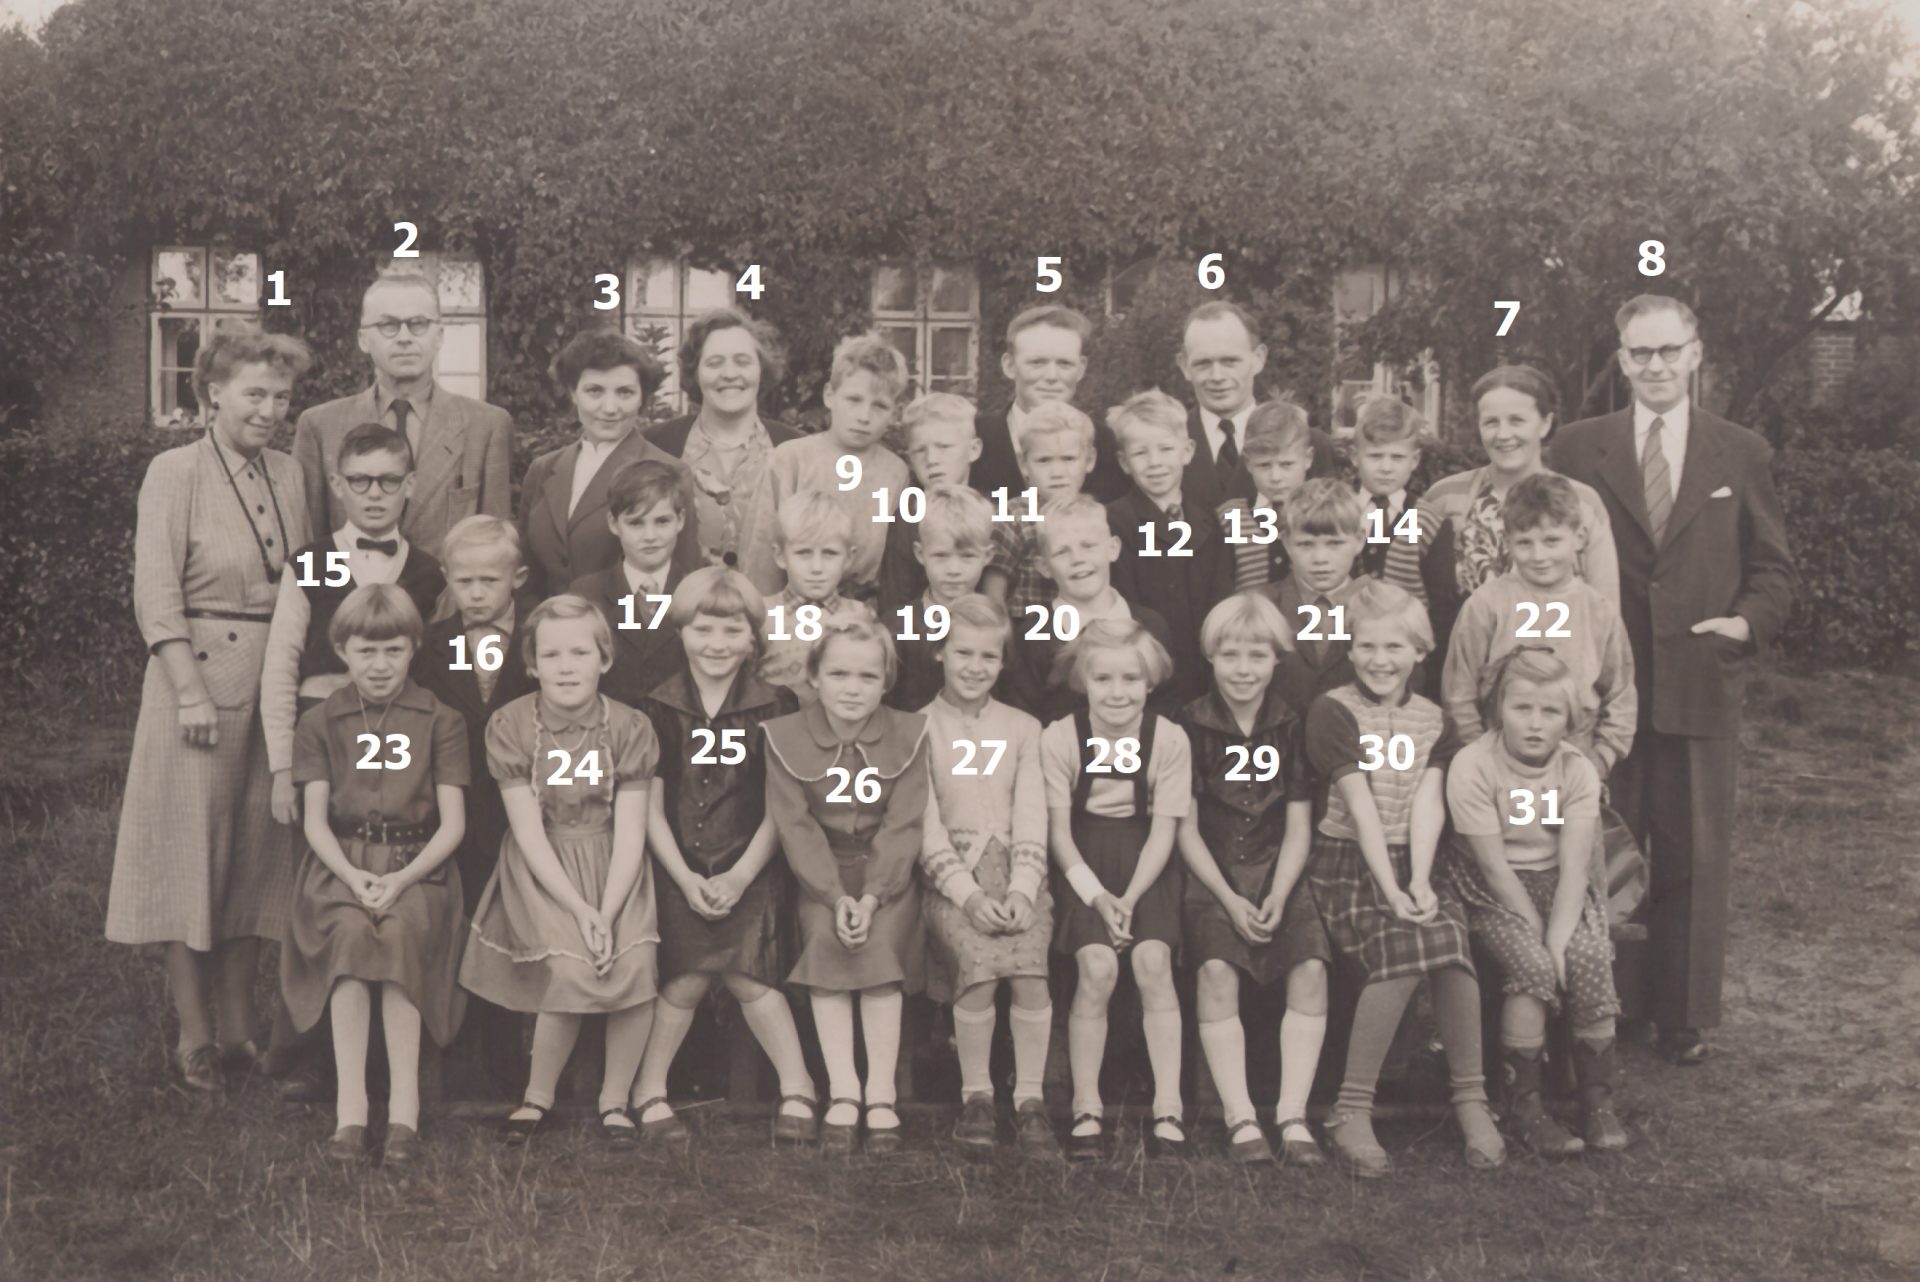 Agerfeld Skoles yngste klasse fotograferet i 1954 med medlemmer af skolekommissionen. Klik på billedet for at se det i større format.